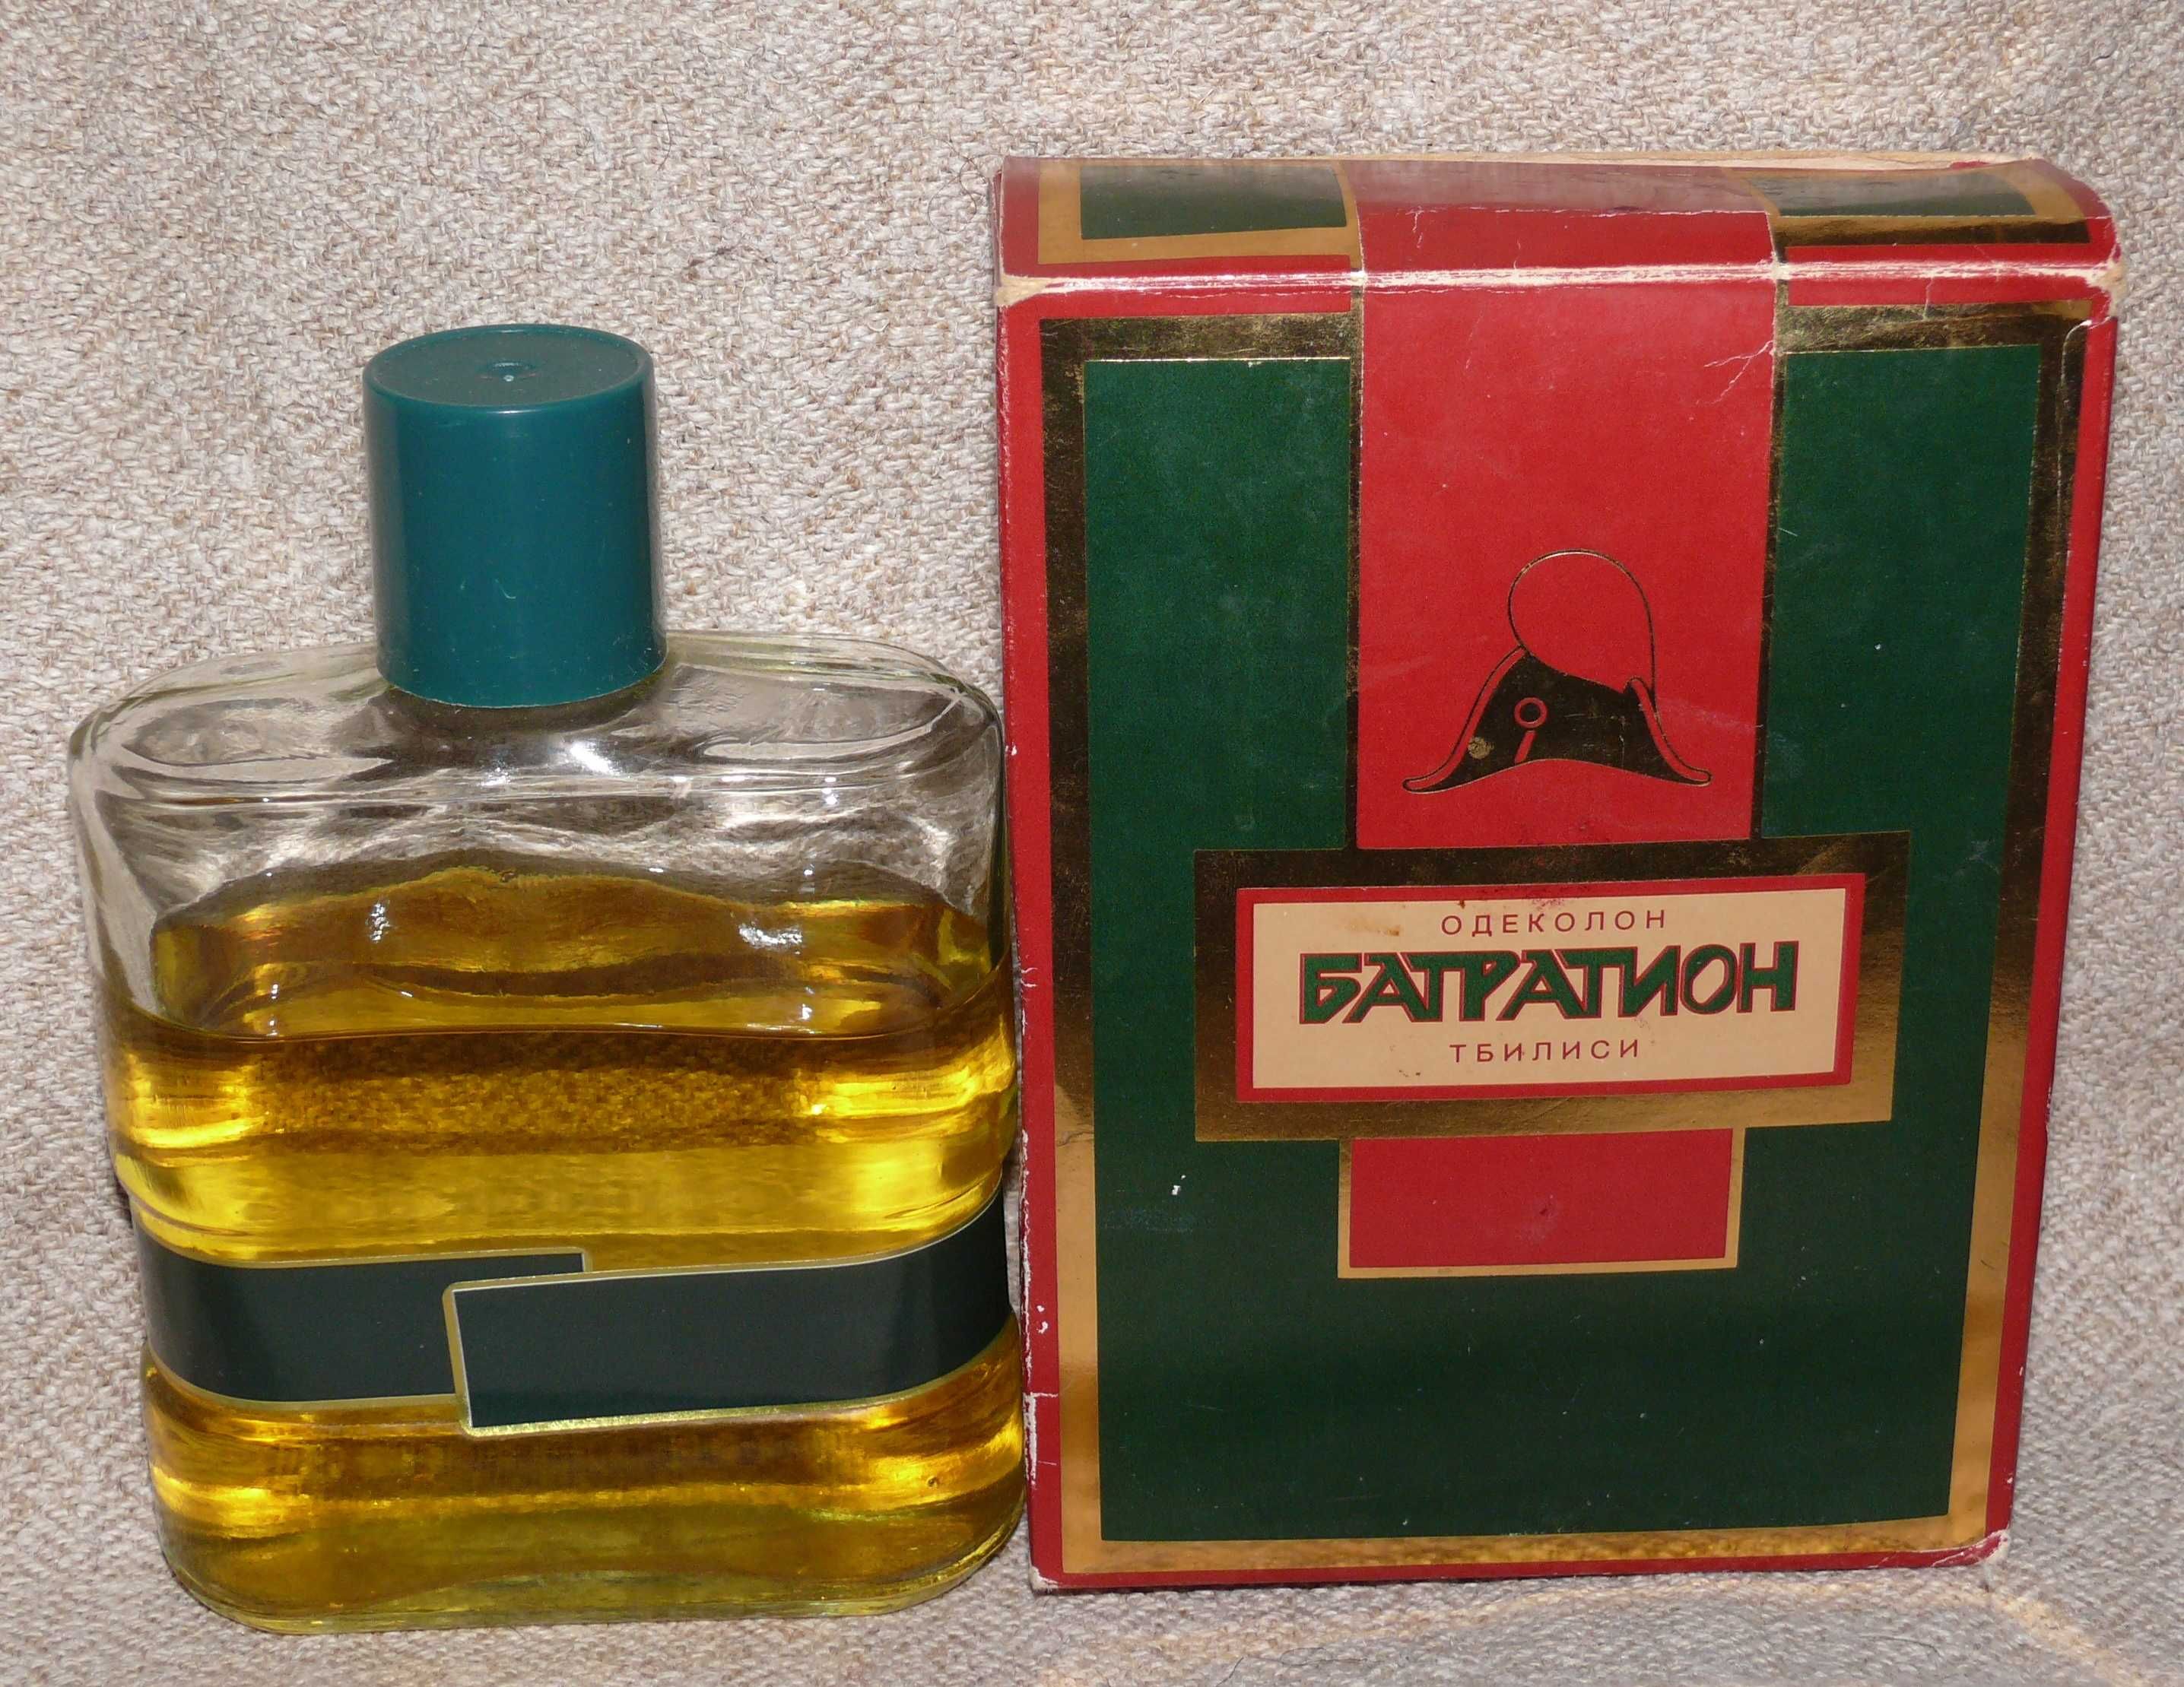 Одеколон Багратион Иверия. гр. Экстра, гост 1971 года. Отличный аромат